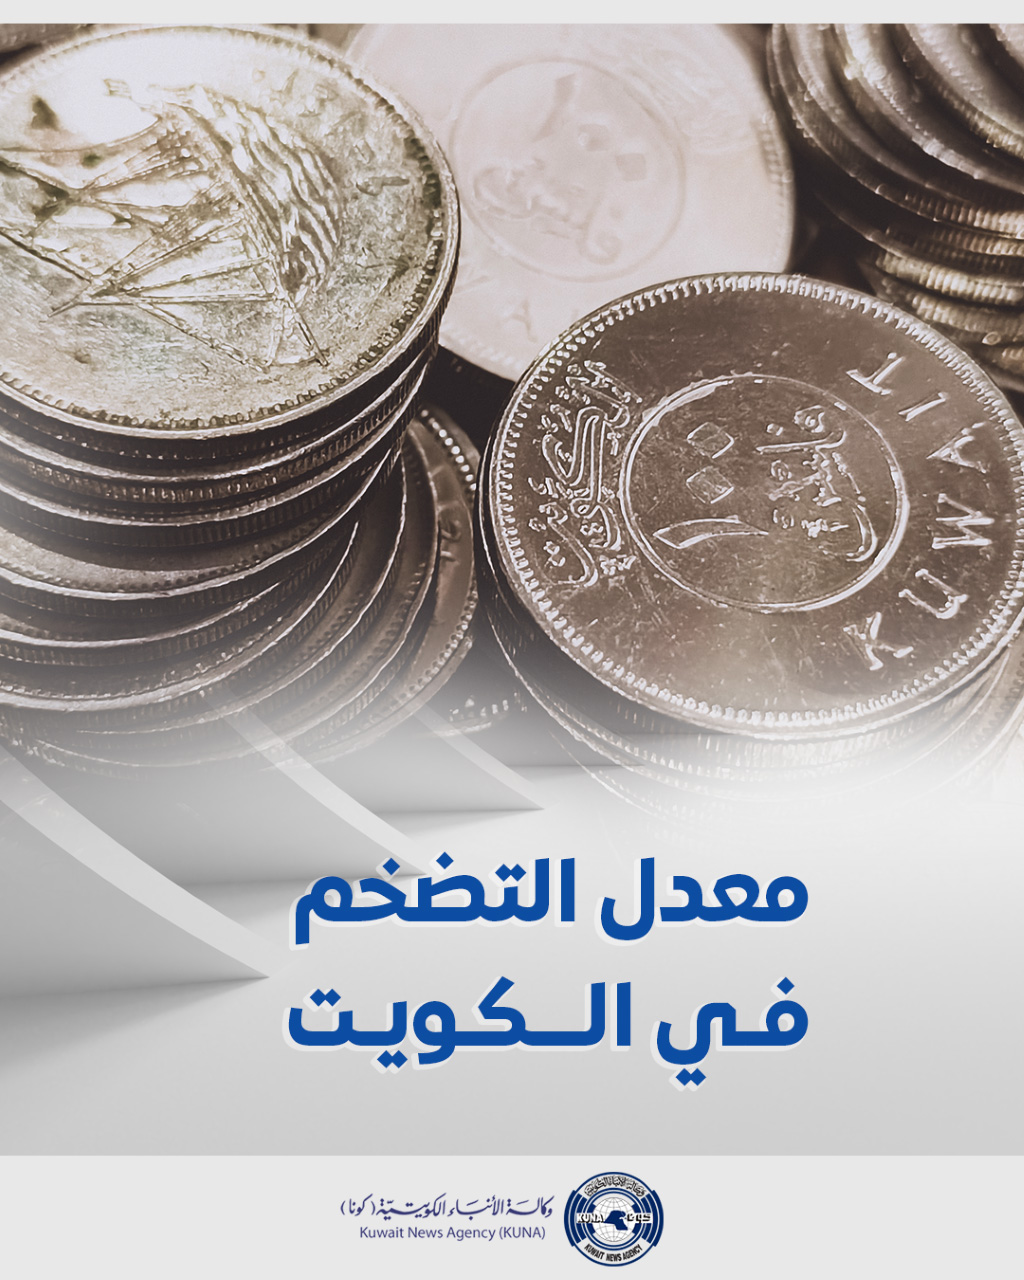 (الإحصاء): ارتفاع التضخم في الكويت بنسبة 7ر3 في المئة في مارس الماضي على أساس سنوي